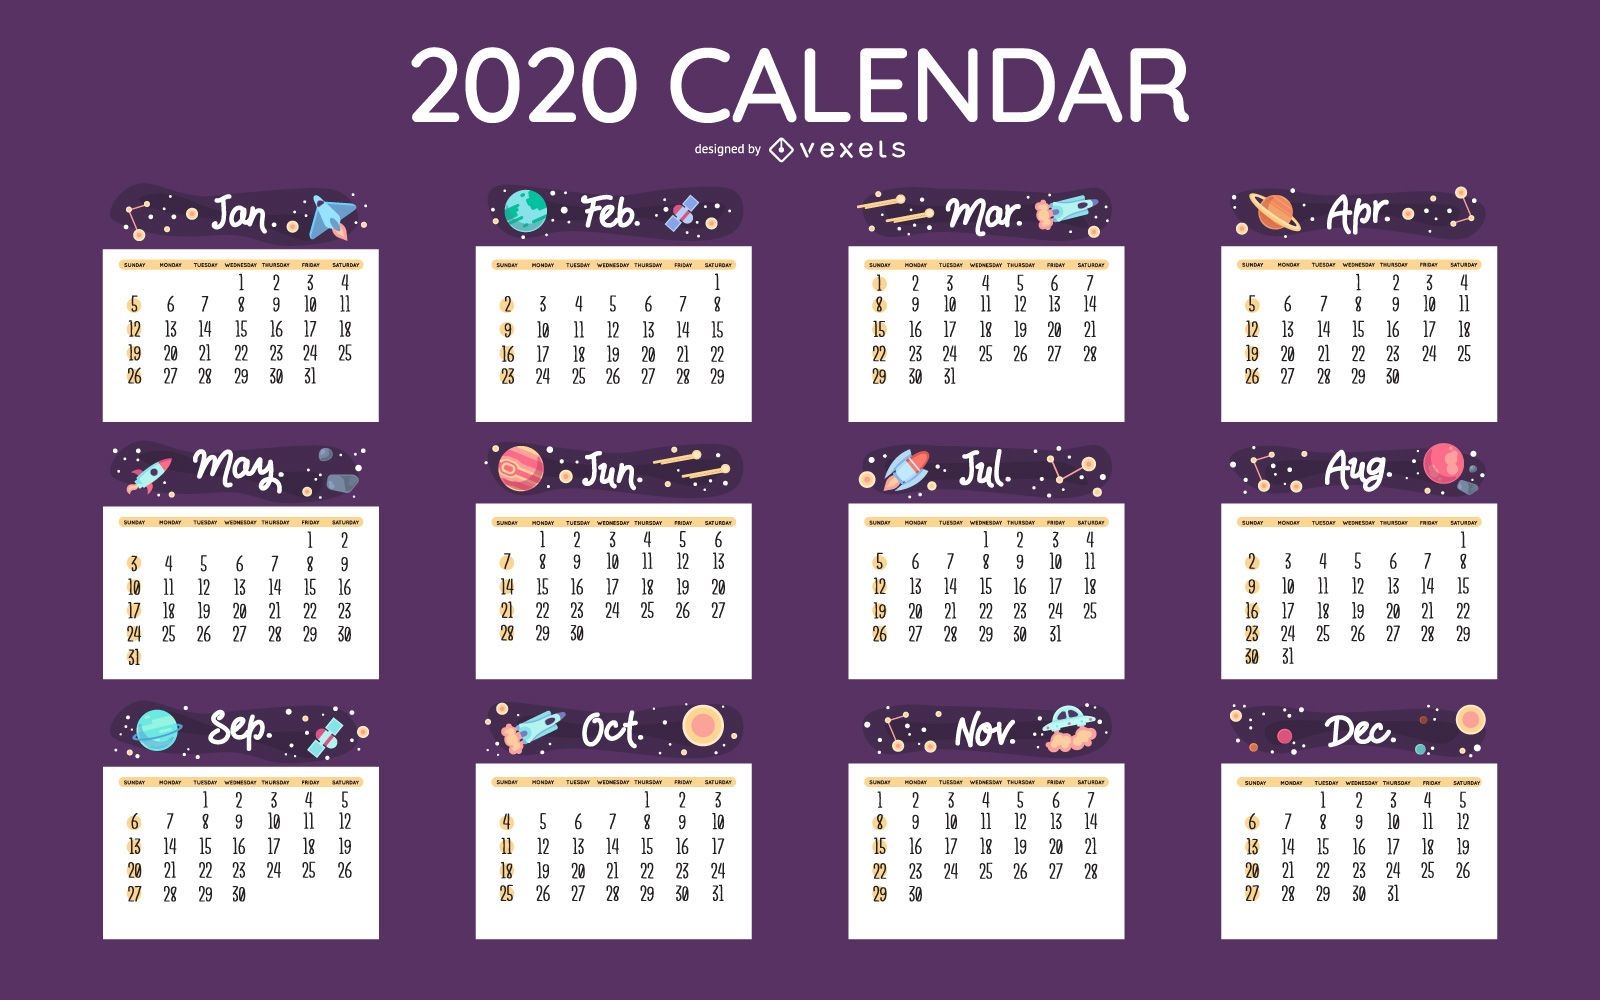 Dise?o de calendario espacial 2020